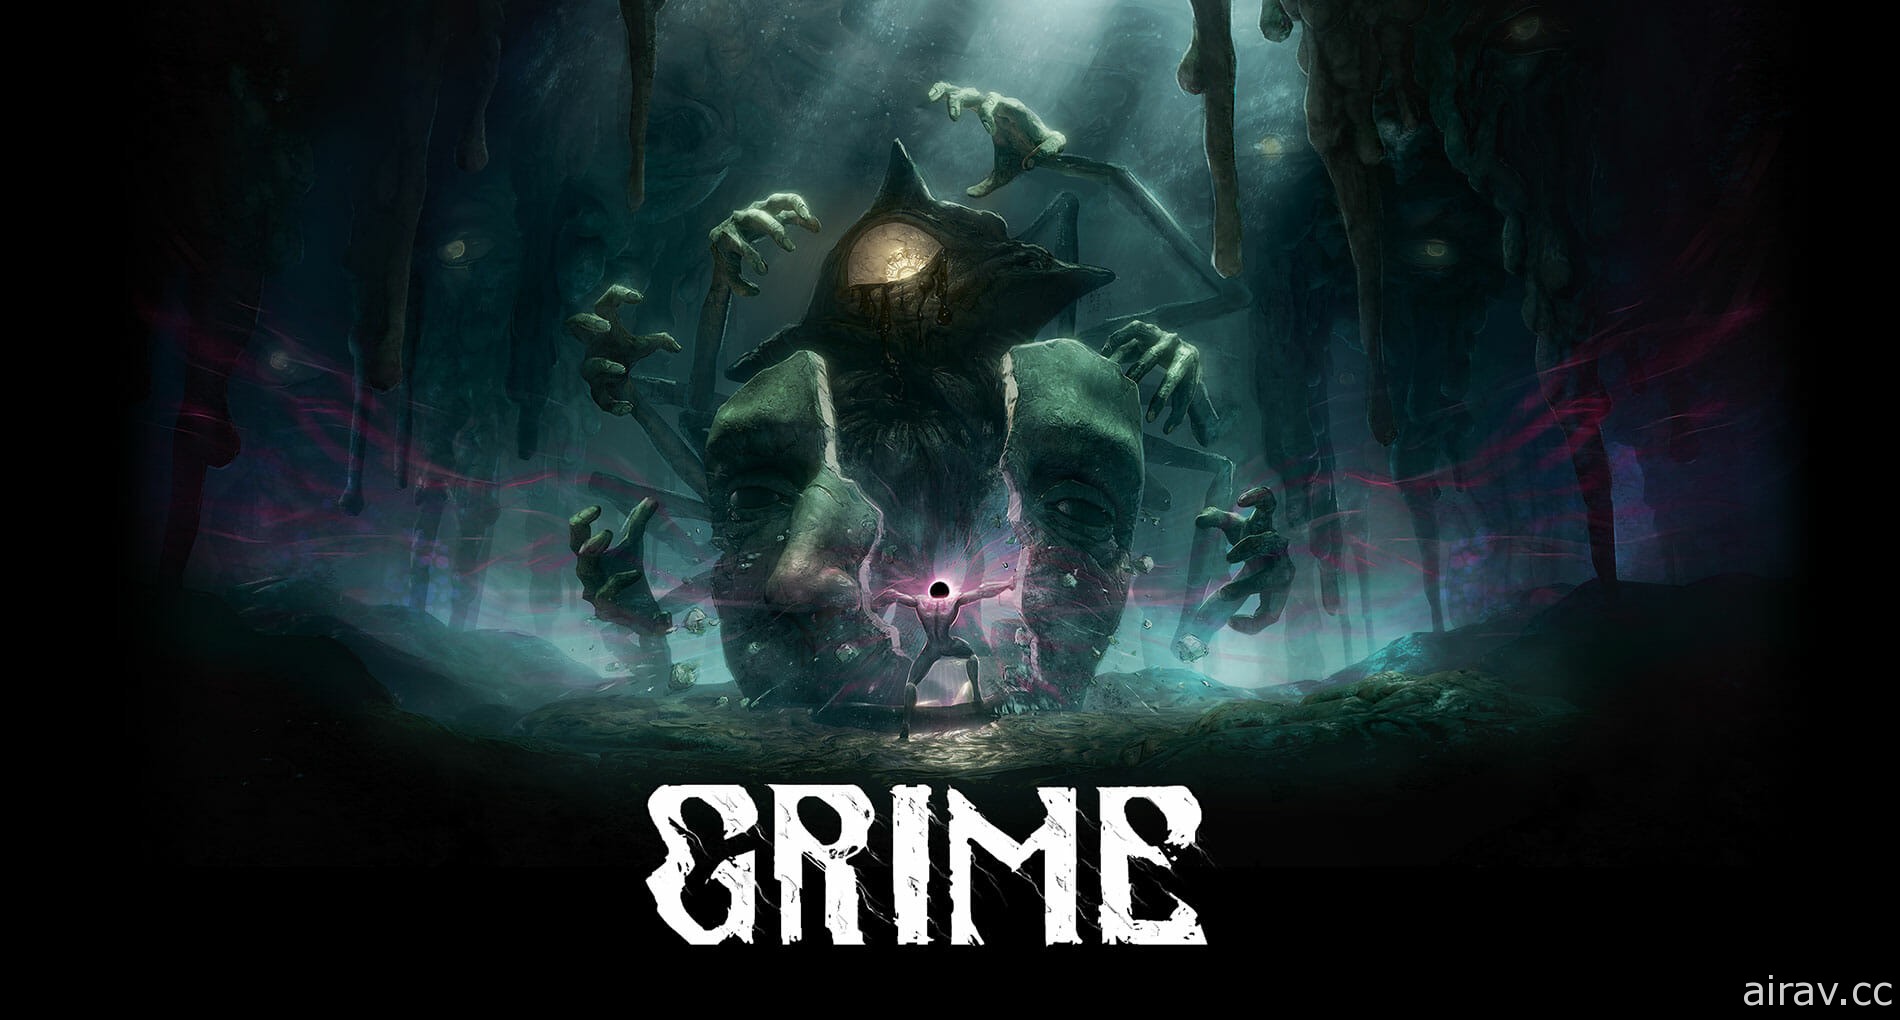 研發中動作遊戲《塵埃異變 GRIME》釋出新戰鬥特色展示影片